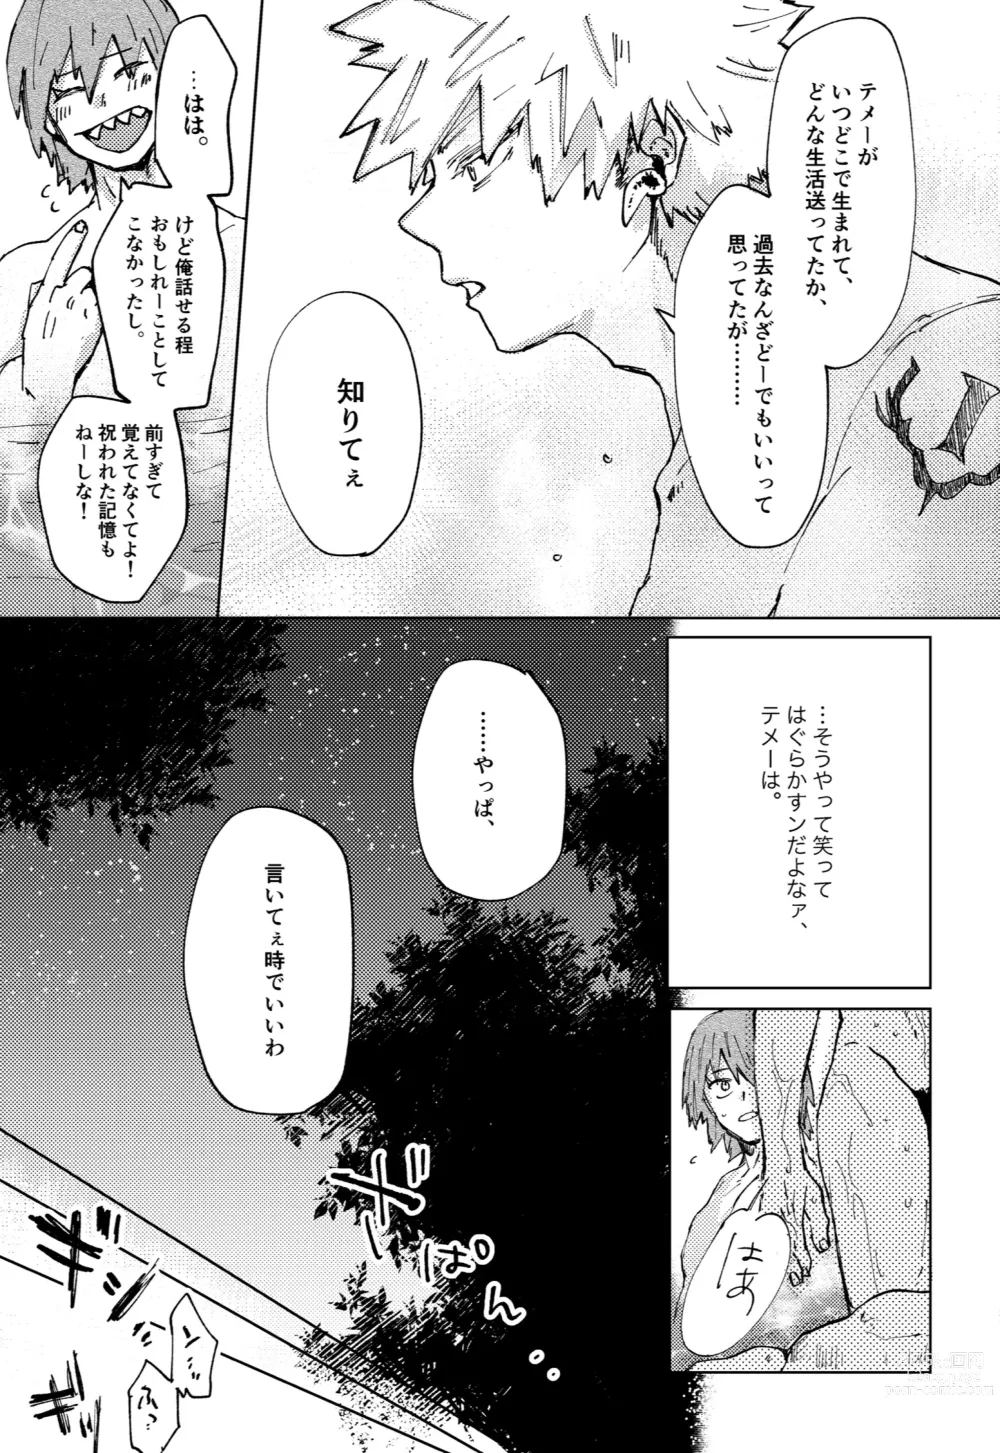 Page 9 of doujinshi Futatsu no Inochi